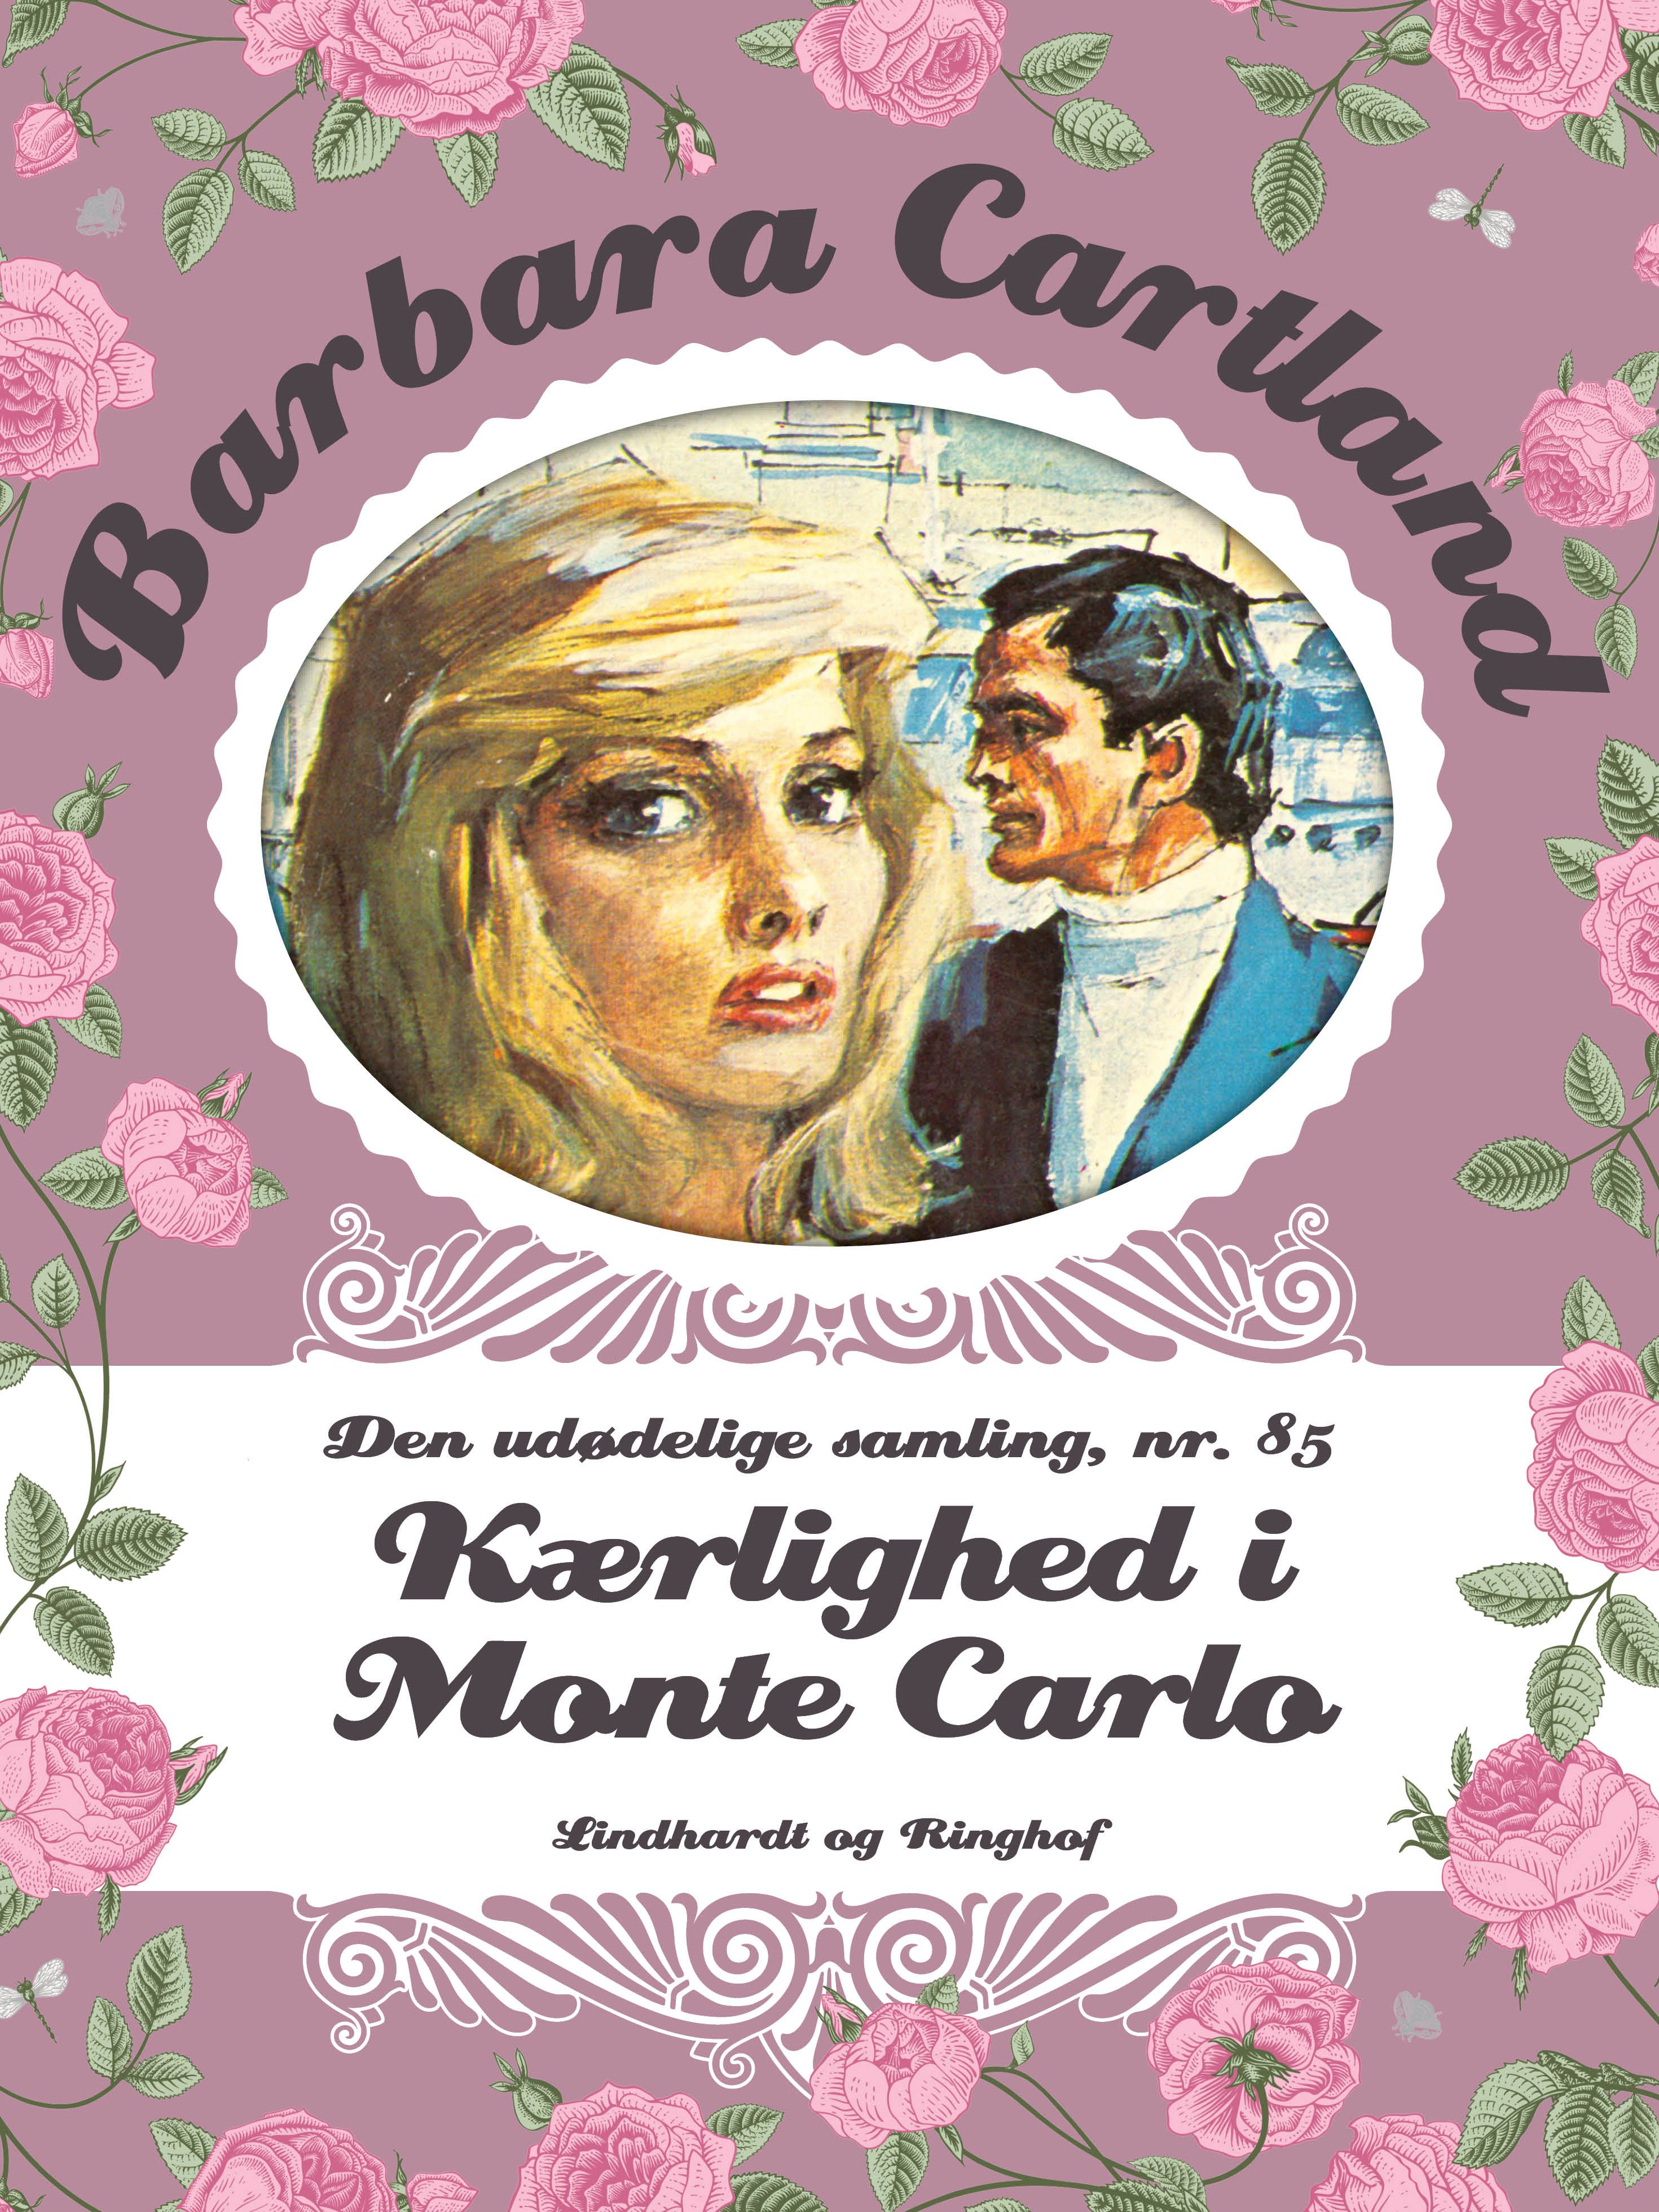 Kærlighed i Monte Carlo, ljudbok av Barbara Cartland